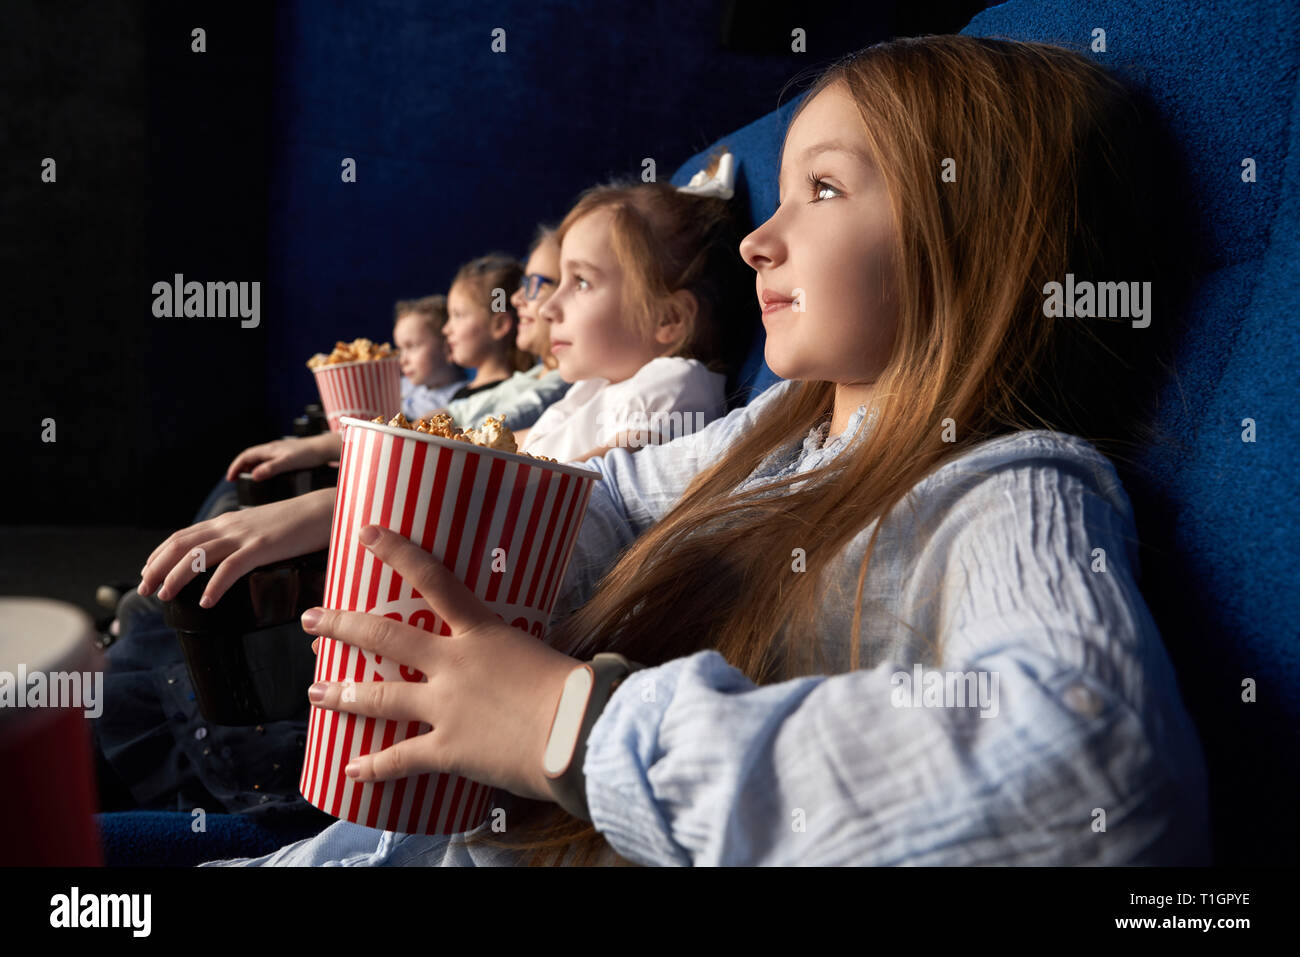 Jolie, little girl holding seau de maîs éclaté, assis avec des amis au cinéma, dans des chaises confortables. Les enfants regarder dessin animé ou film. Loisirs, divertissement. Banque D'Images